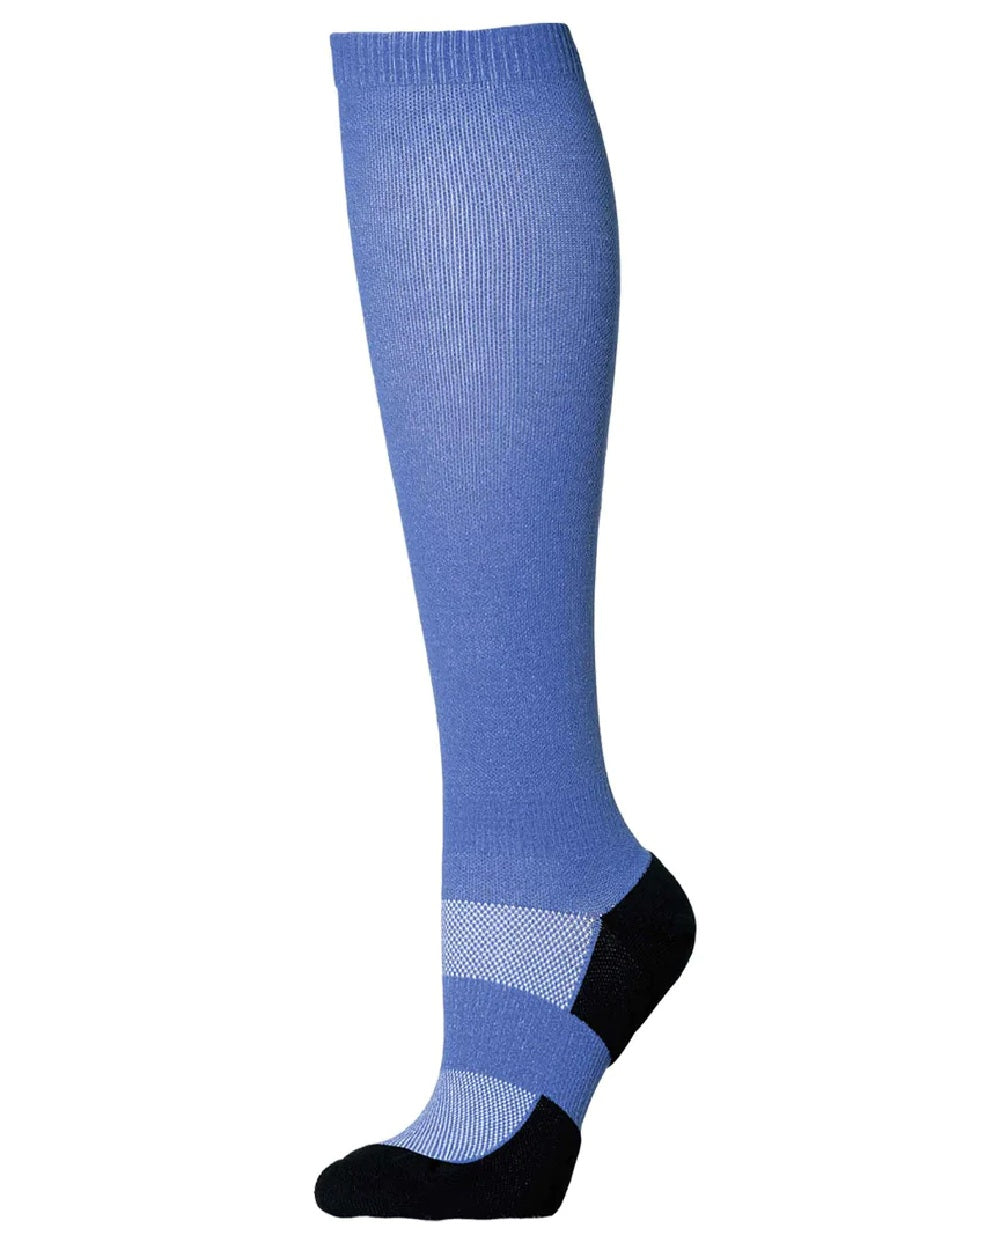 Dublin Light Compression Socks in Delft Blue 